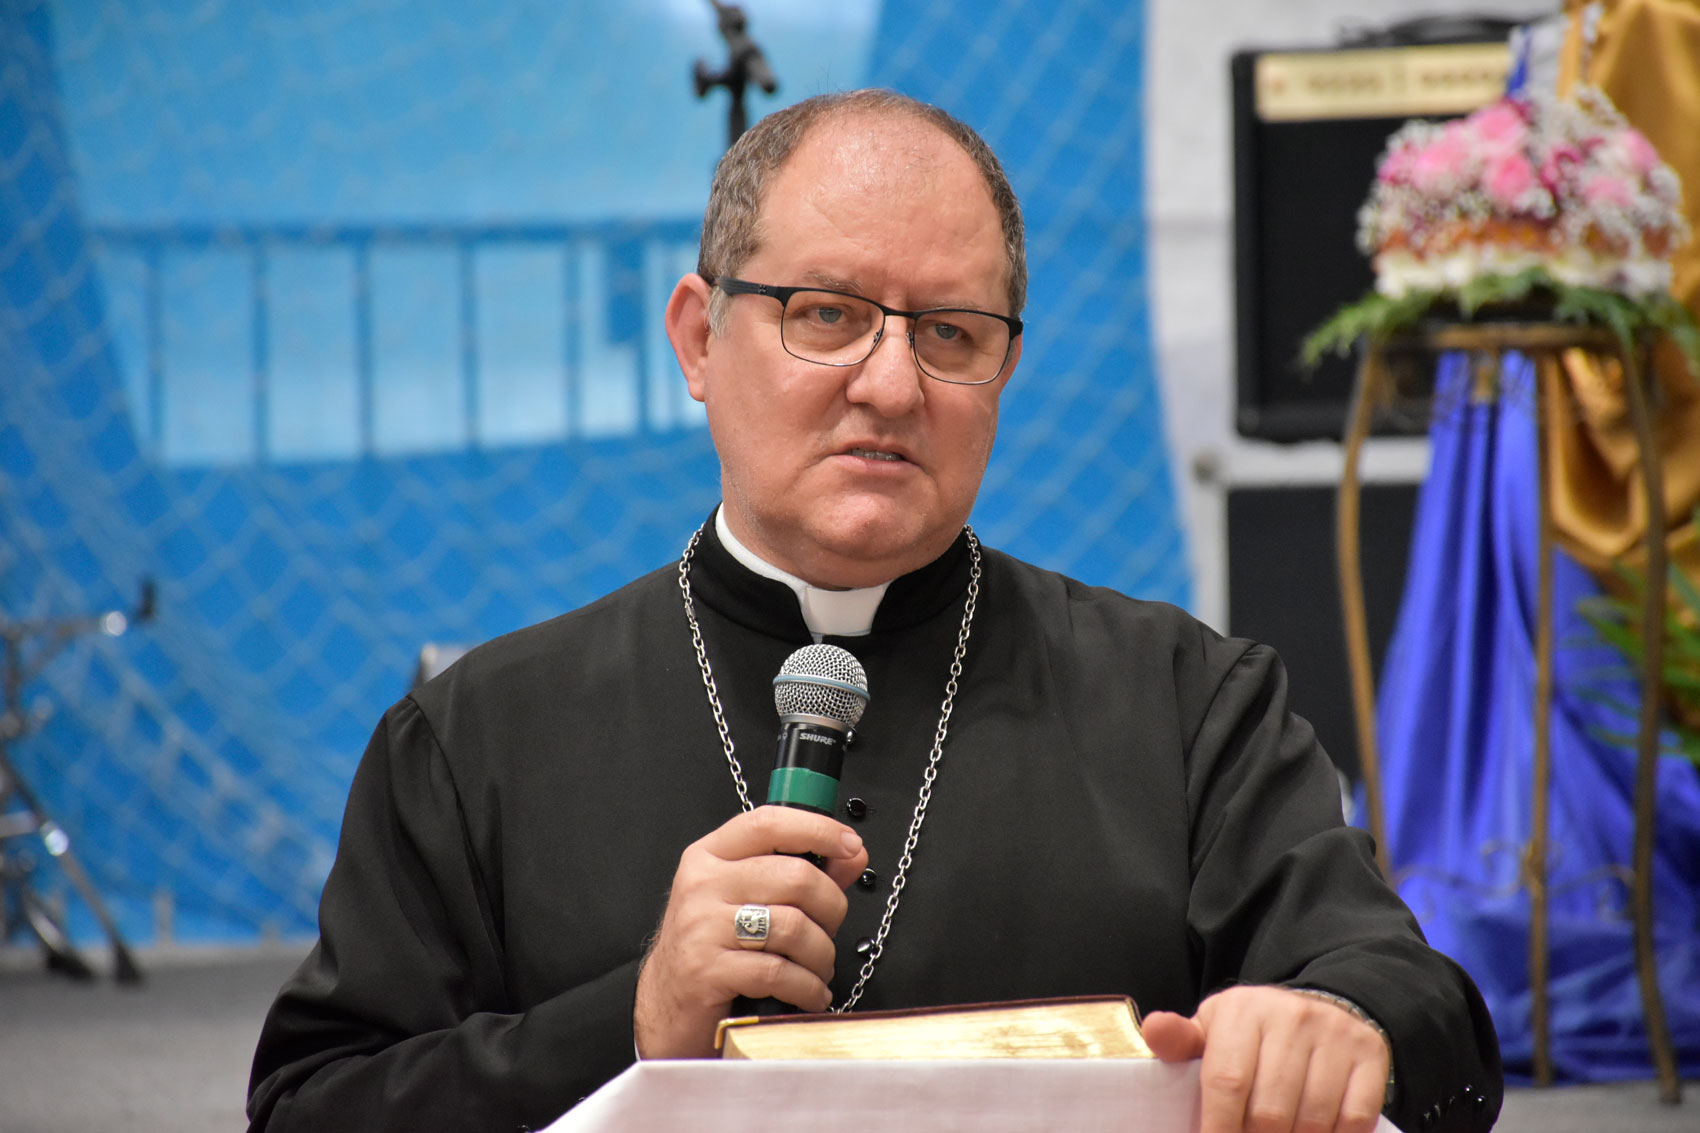 Bispo nomeado para administrar diocese de Formosa já comandou 11